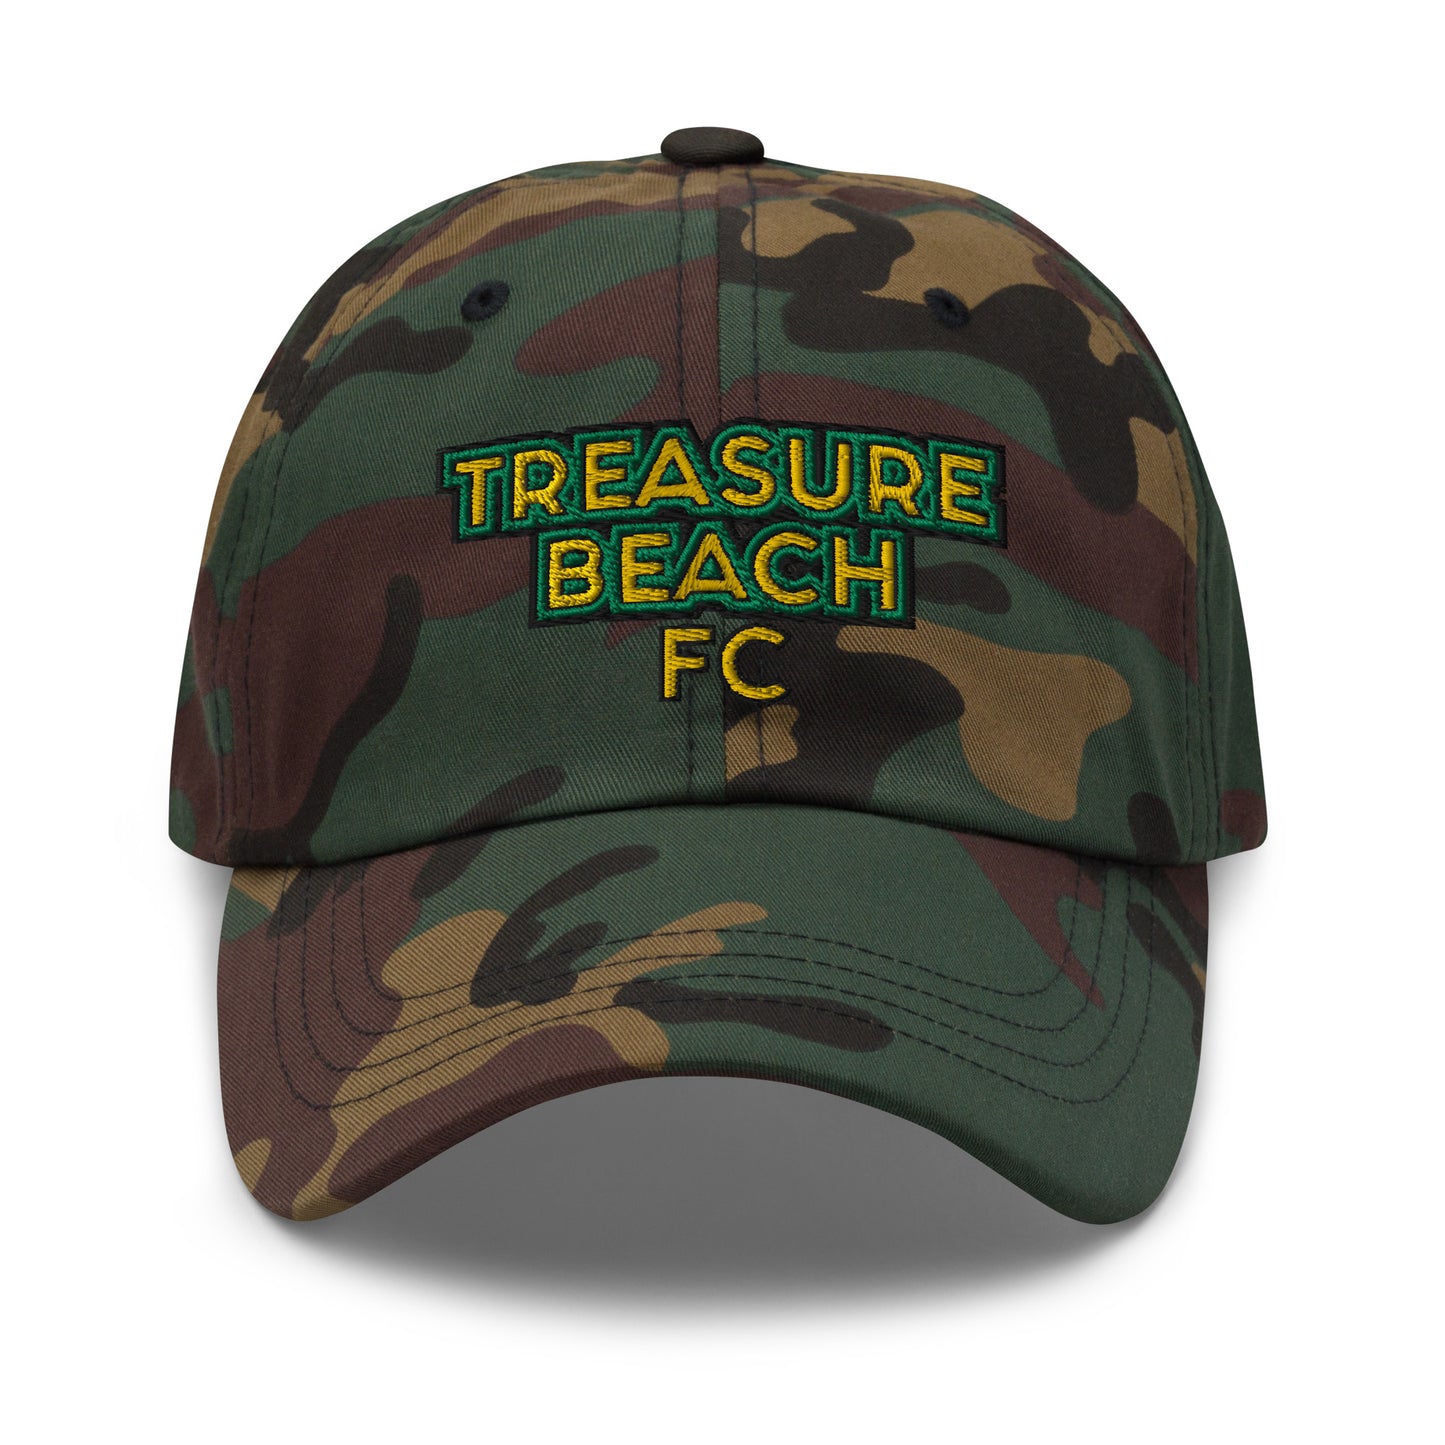 Treasure Beach FC Baseball Cap